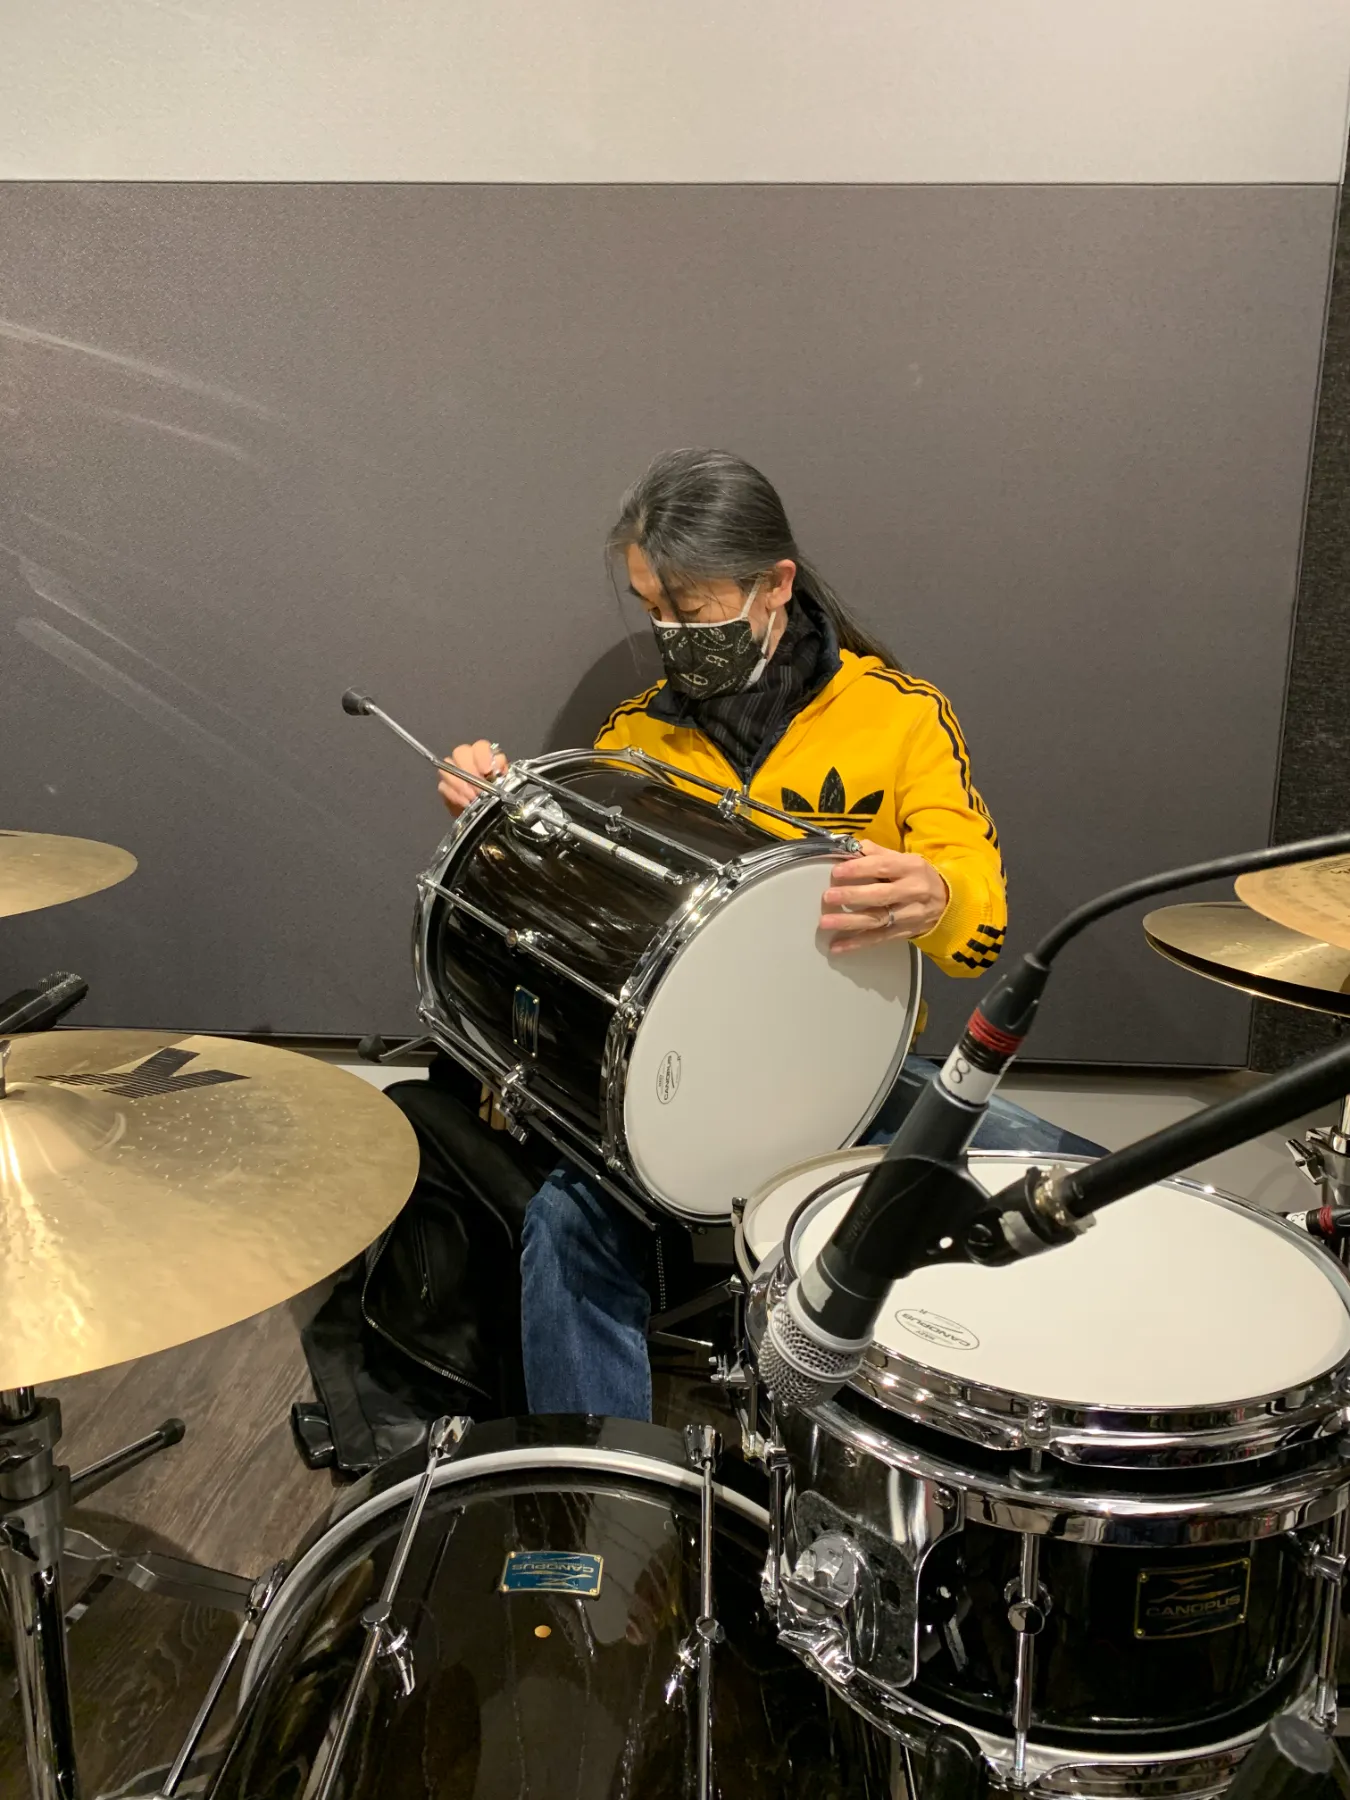 河村”カースケ”智康 Kaasuke Plays Drums [DVD]